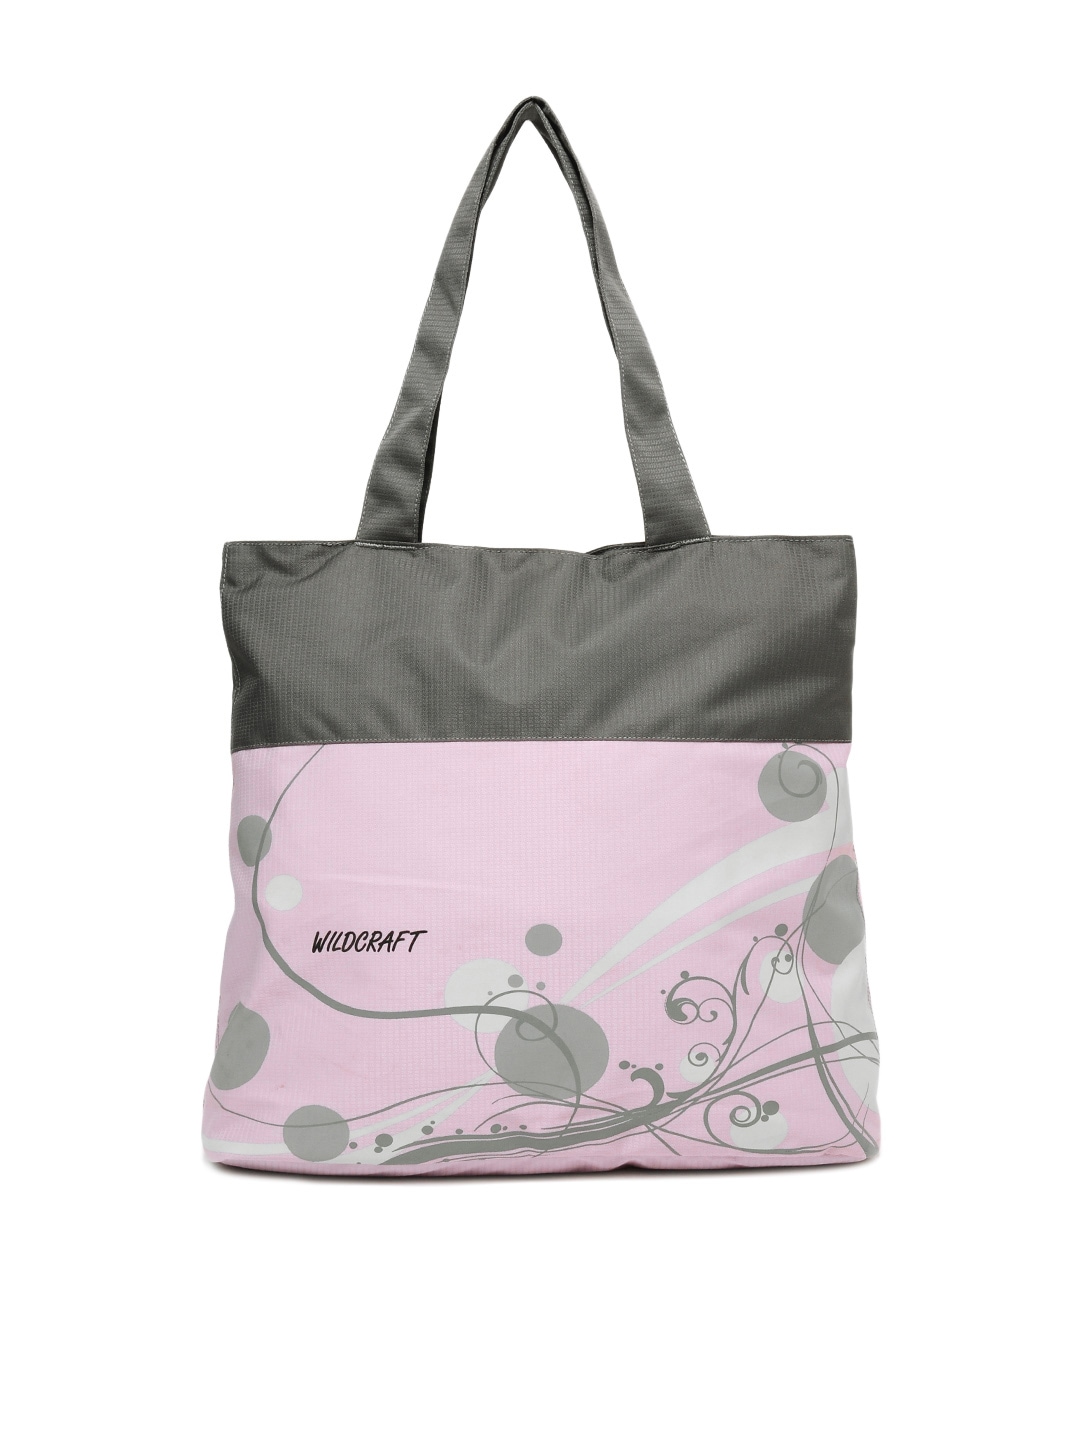 Wildcraft Pink & Grey Printed Tote Bag